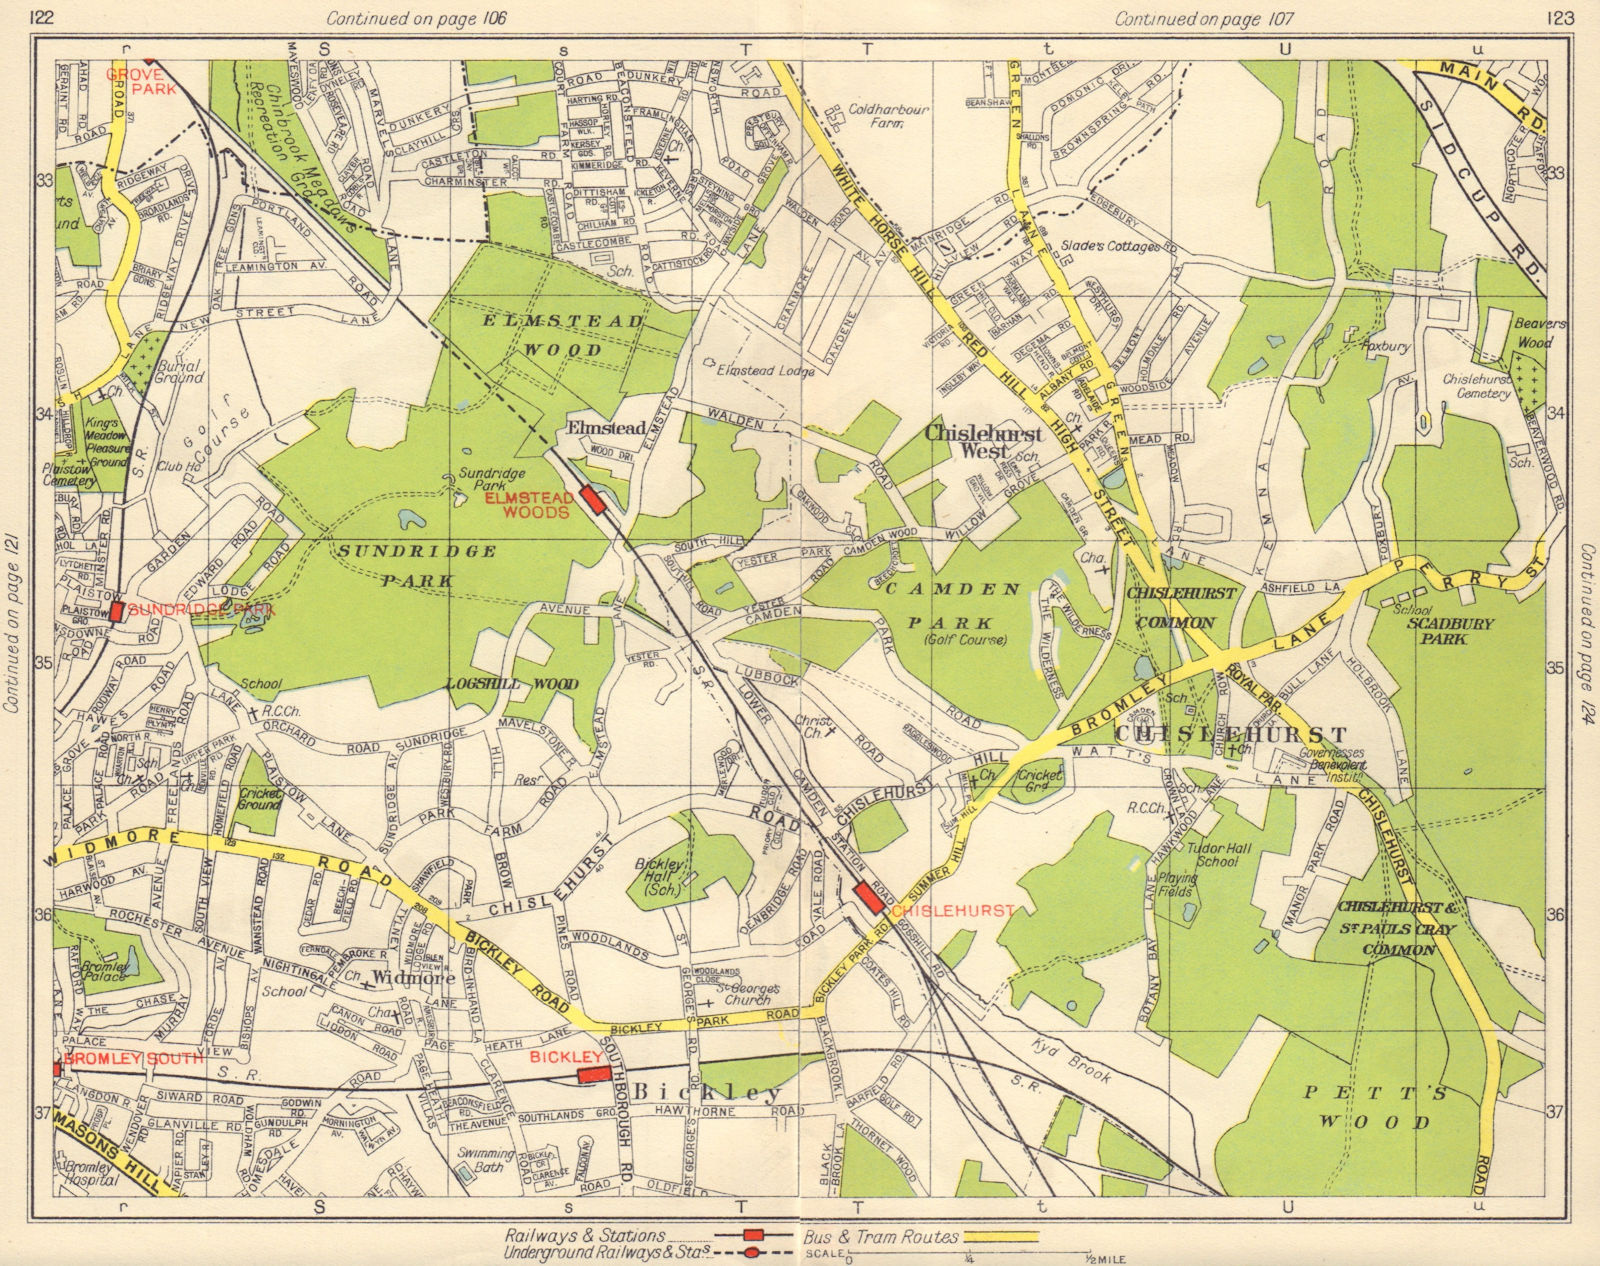 SE LONDON. Chislehurst Widmore Bickley Petts Wood Elmstead Pett's Wood 1948 map